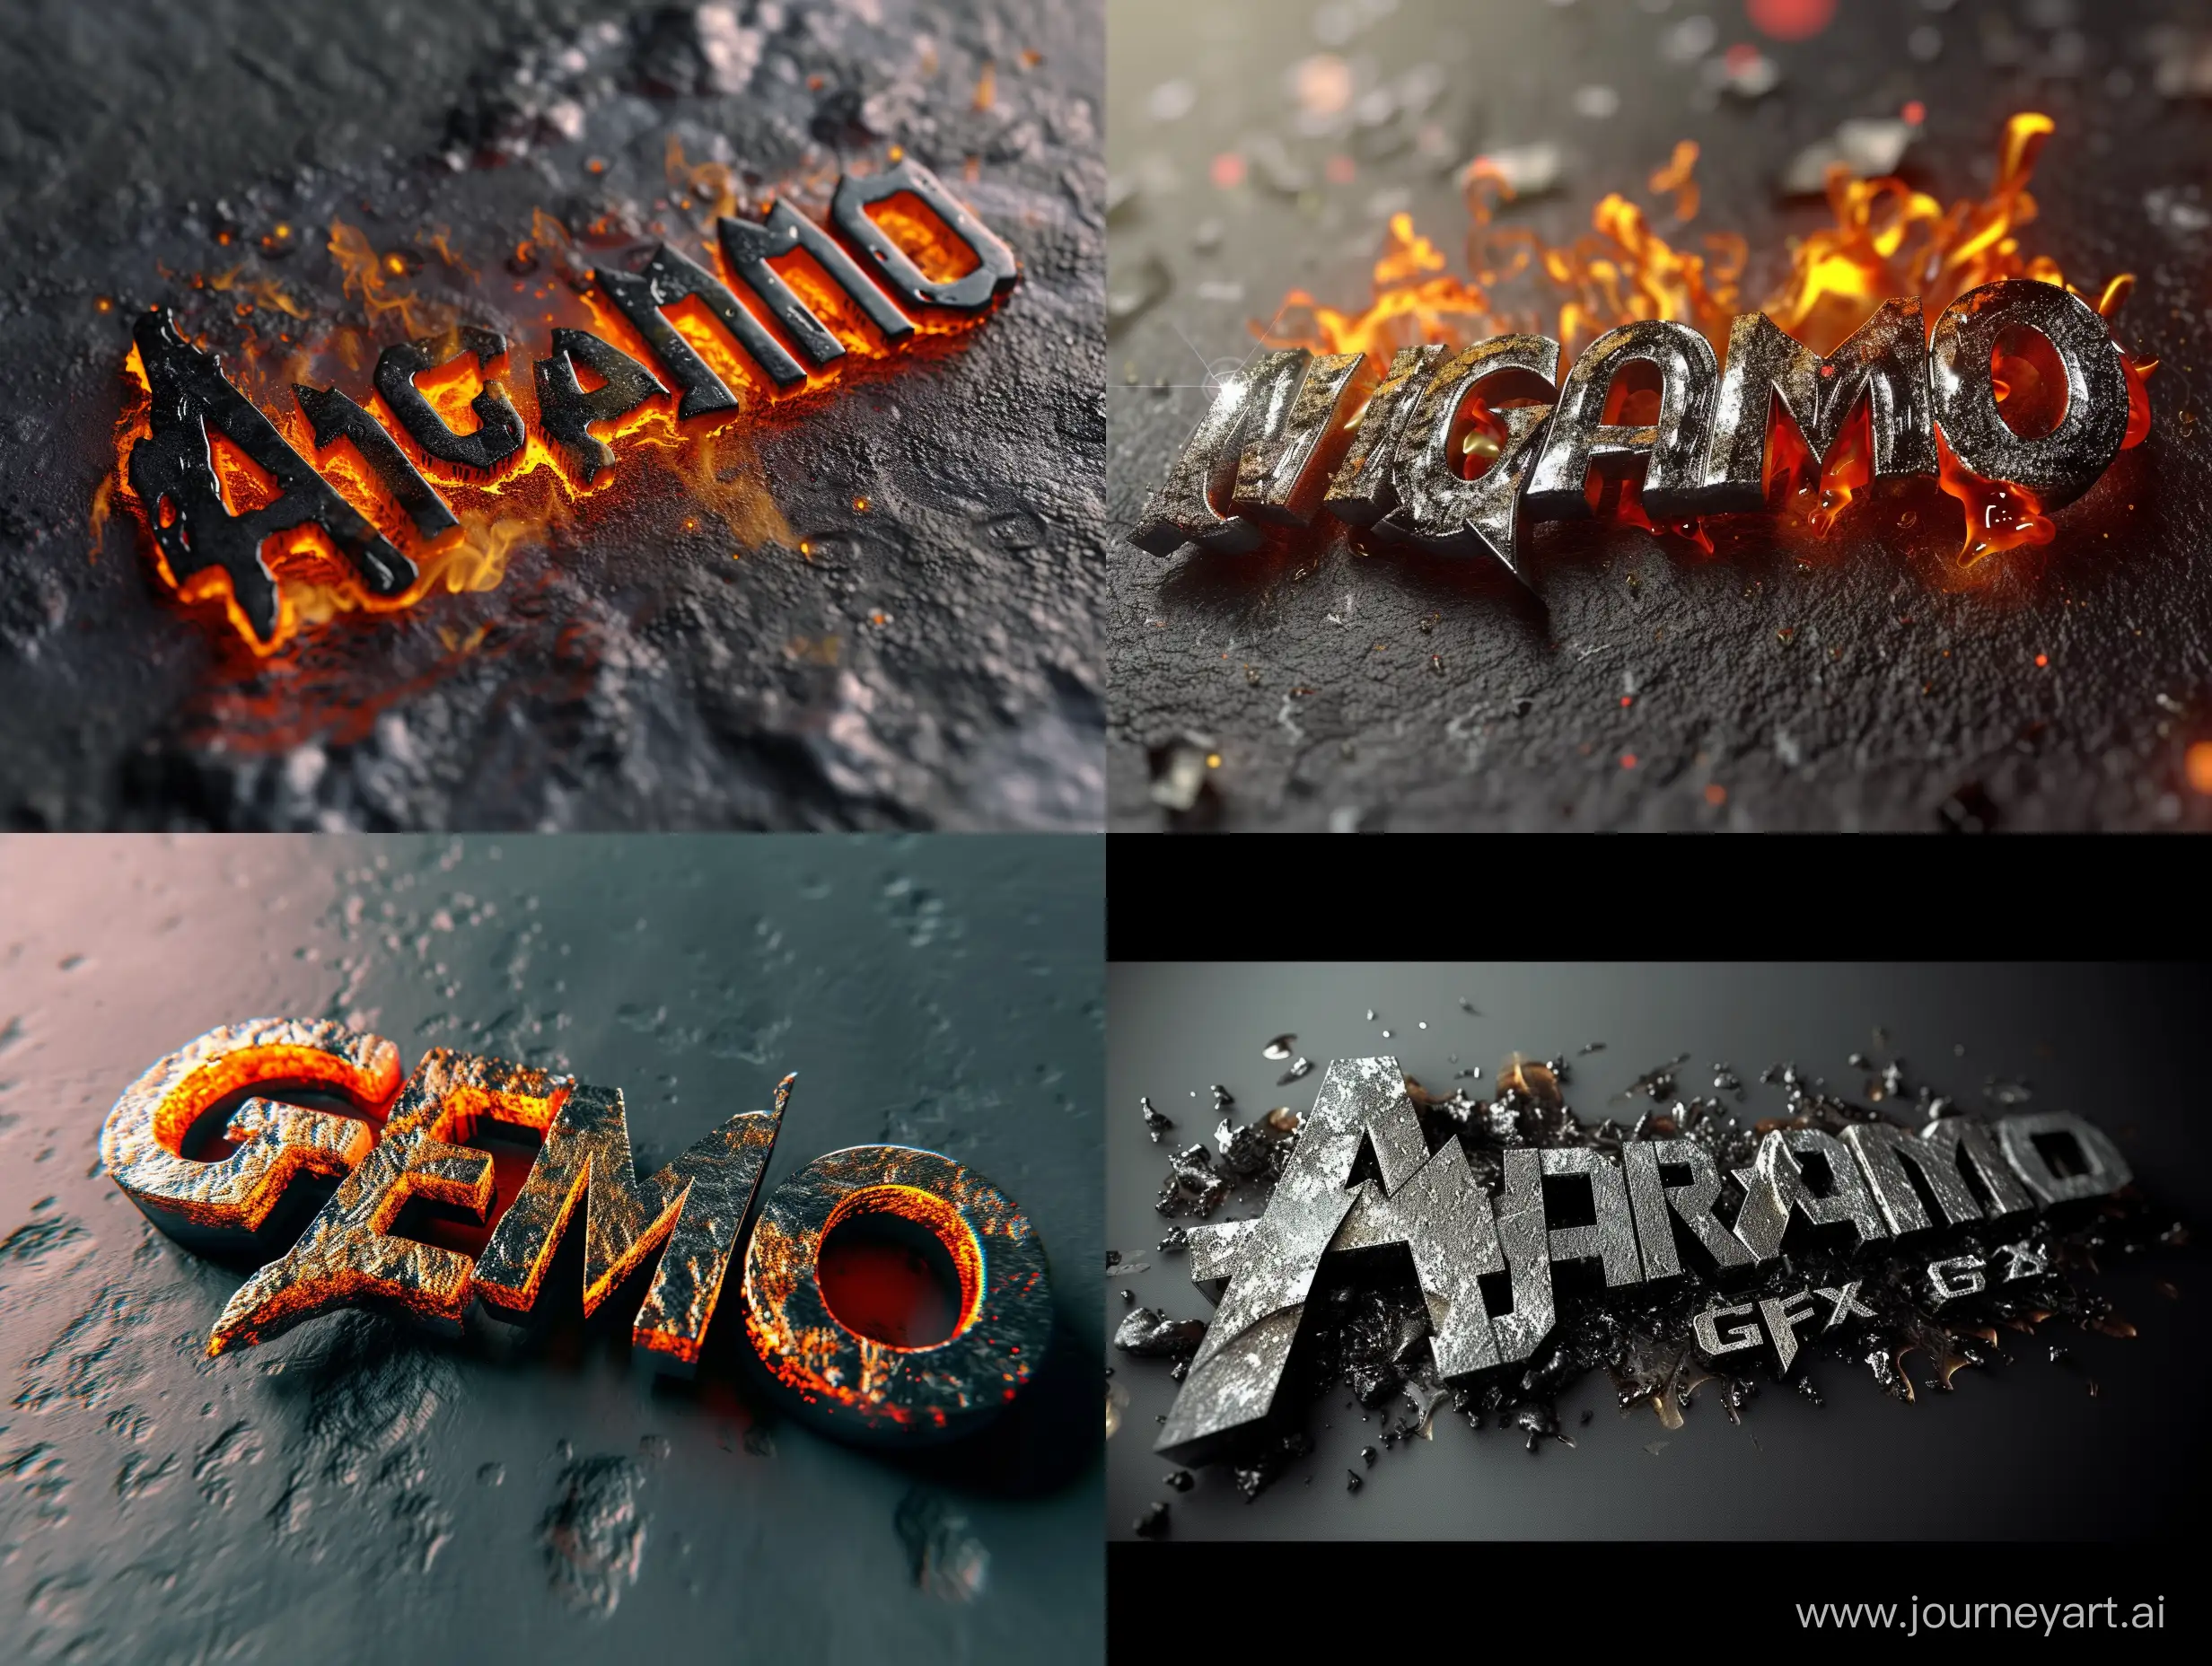 Hot, molten 3D metallic text titled "Angramo GFX"